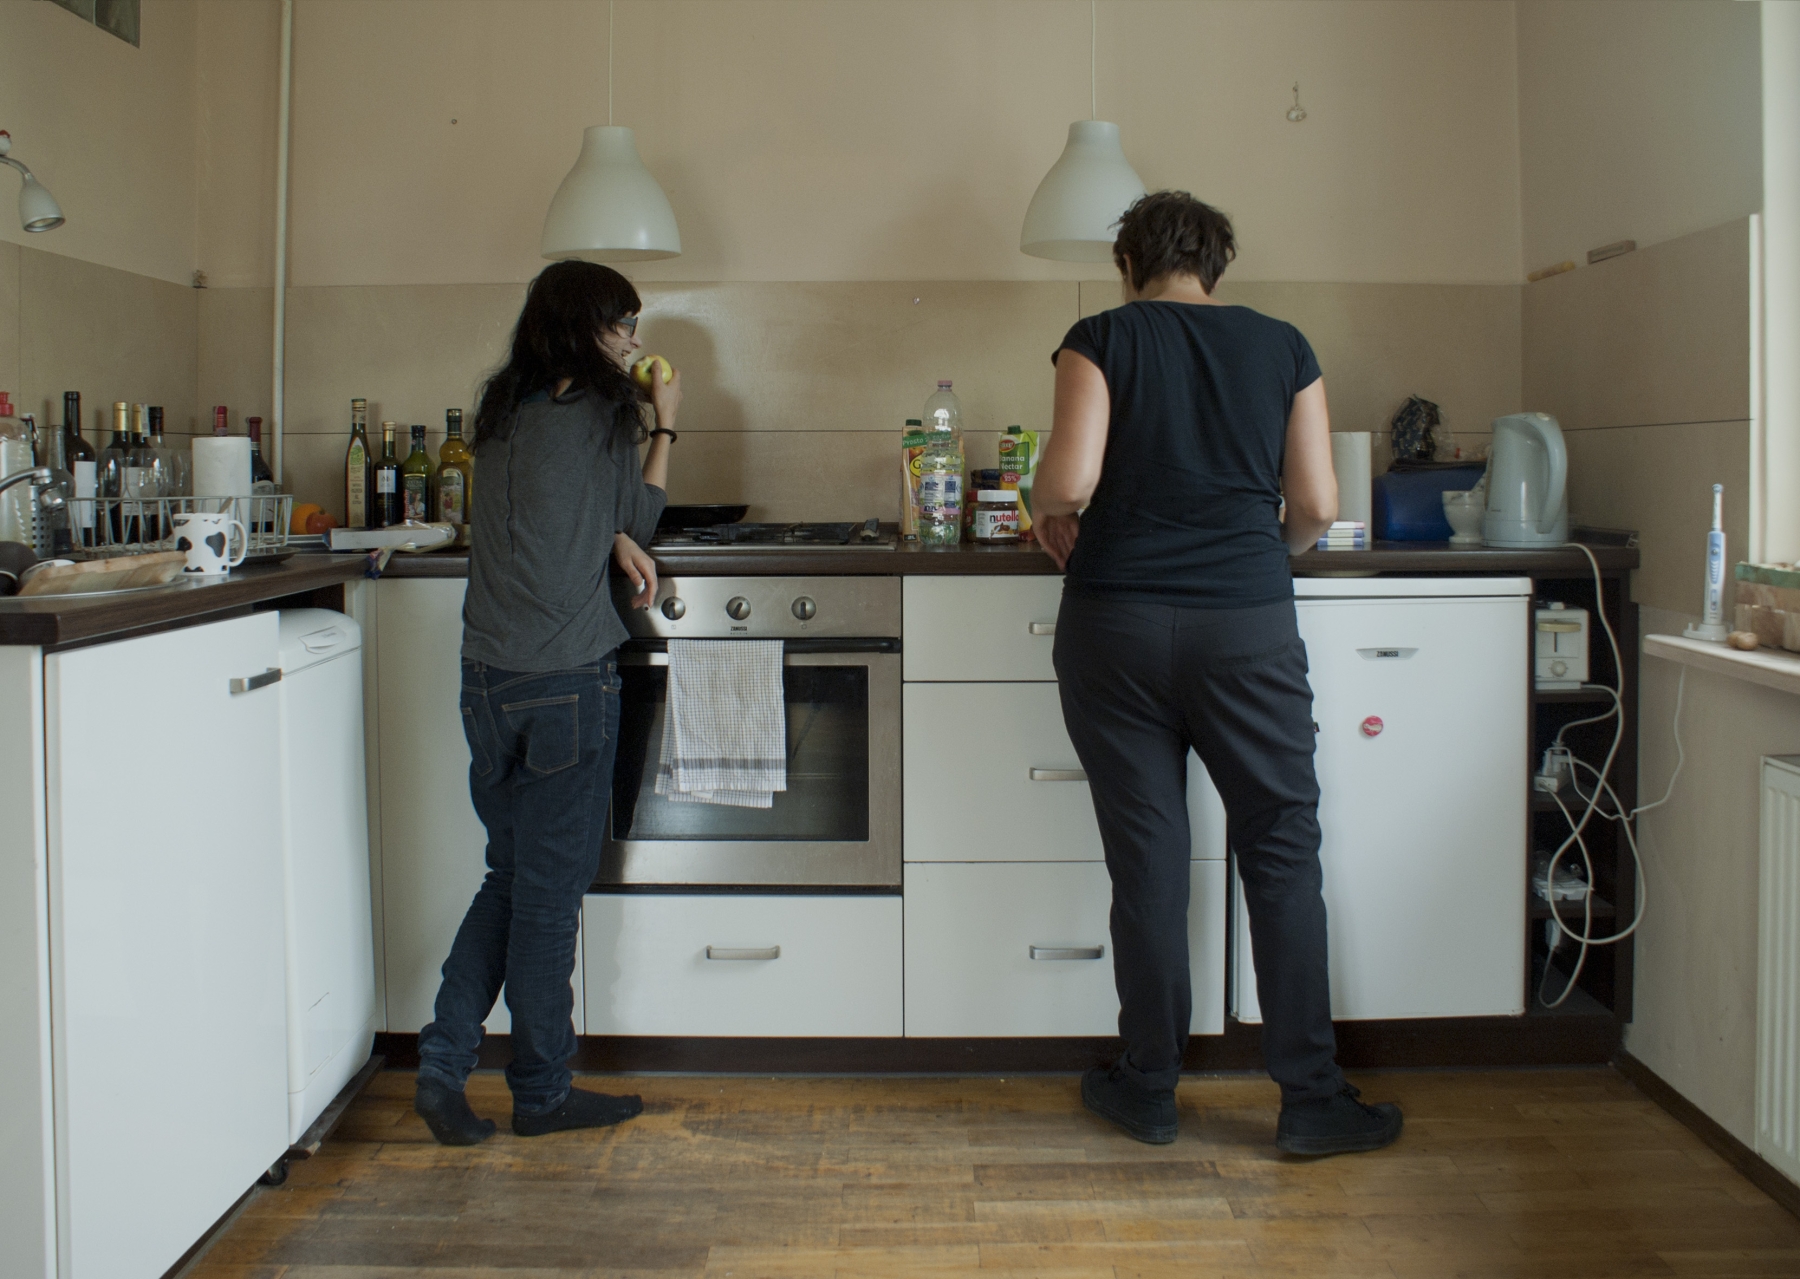 Liliana Piskorska, Ela Jabłońska i Liliana Piskorska w kuchni Eli Jabłońskiej, z cyklu Zawsze byłam z Tobą, 2013, fotografia. Dzięki uprzejmości artystki